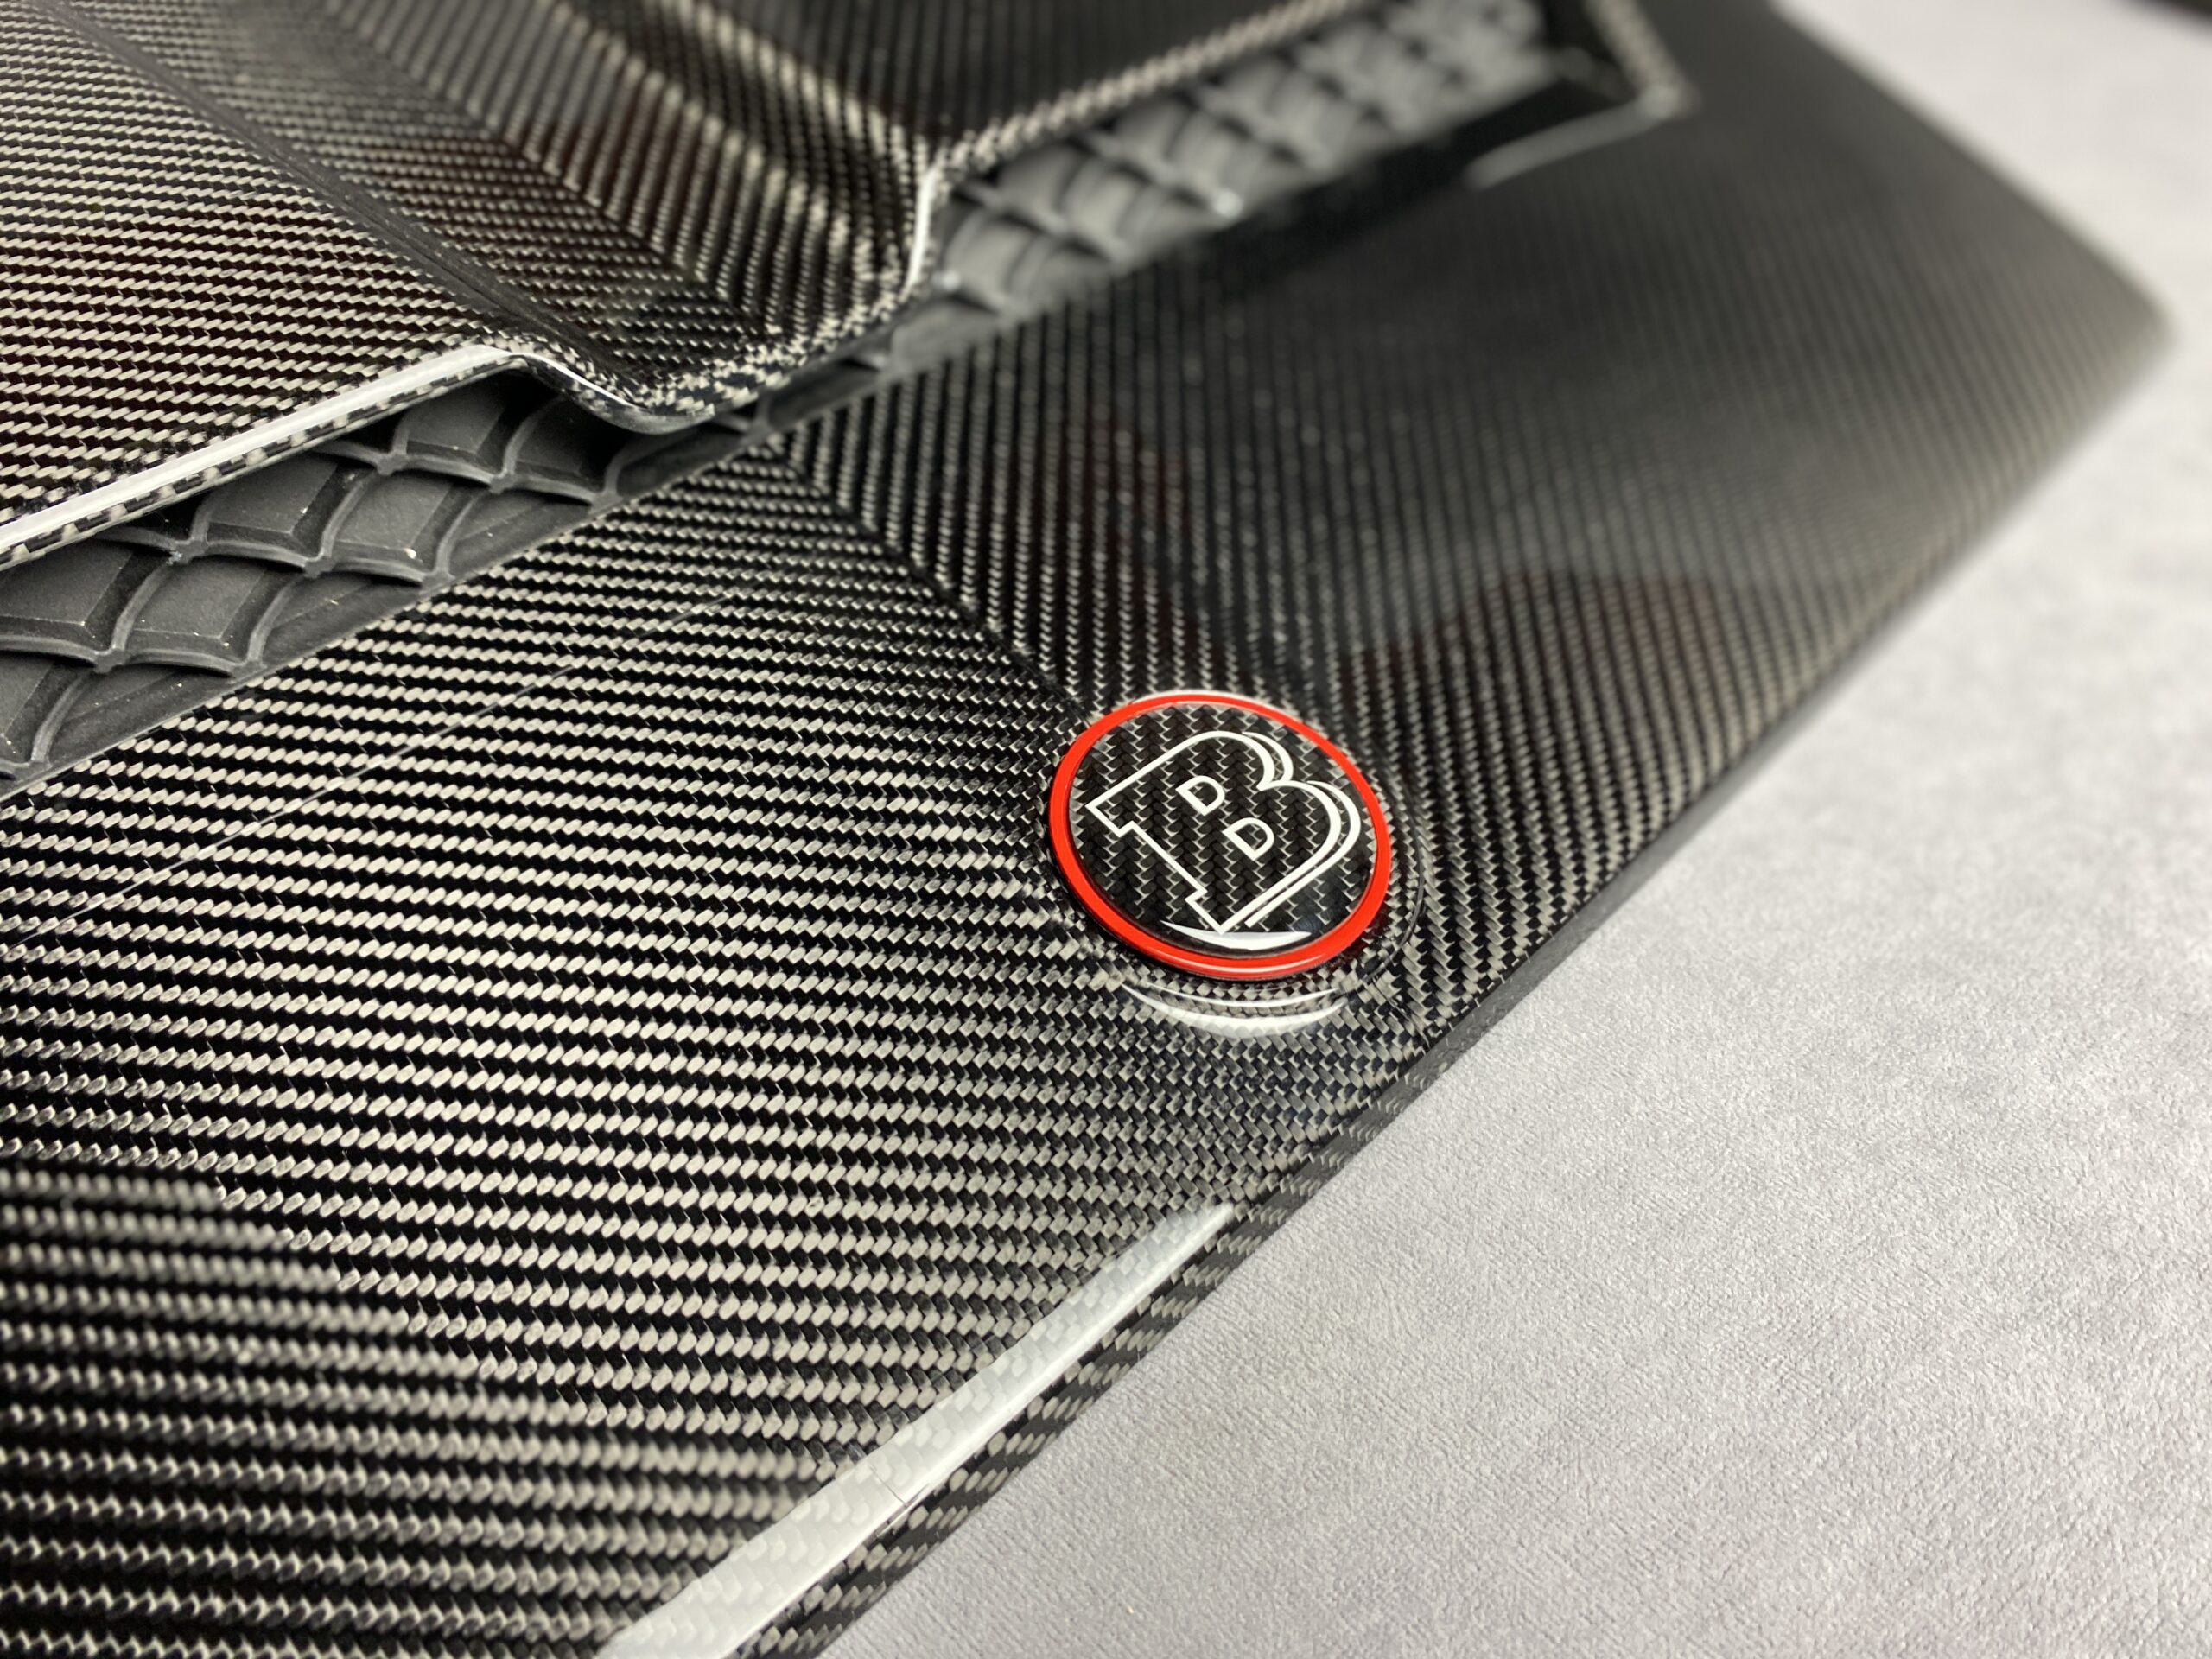 Gray Metal Brabus Badge Logo Emblem 55mm for Hood Scoop Trunk